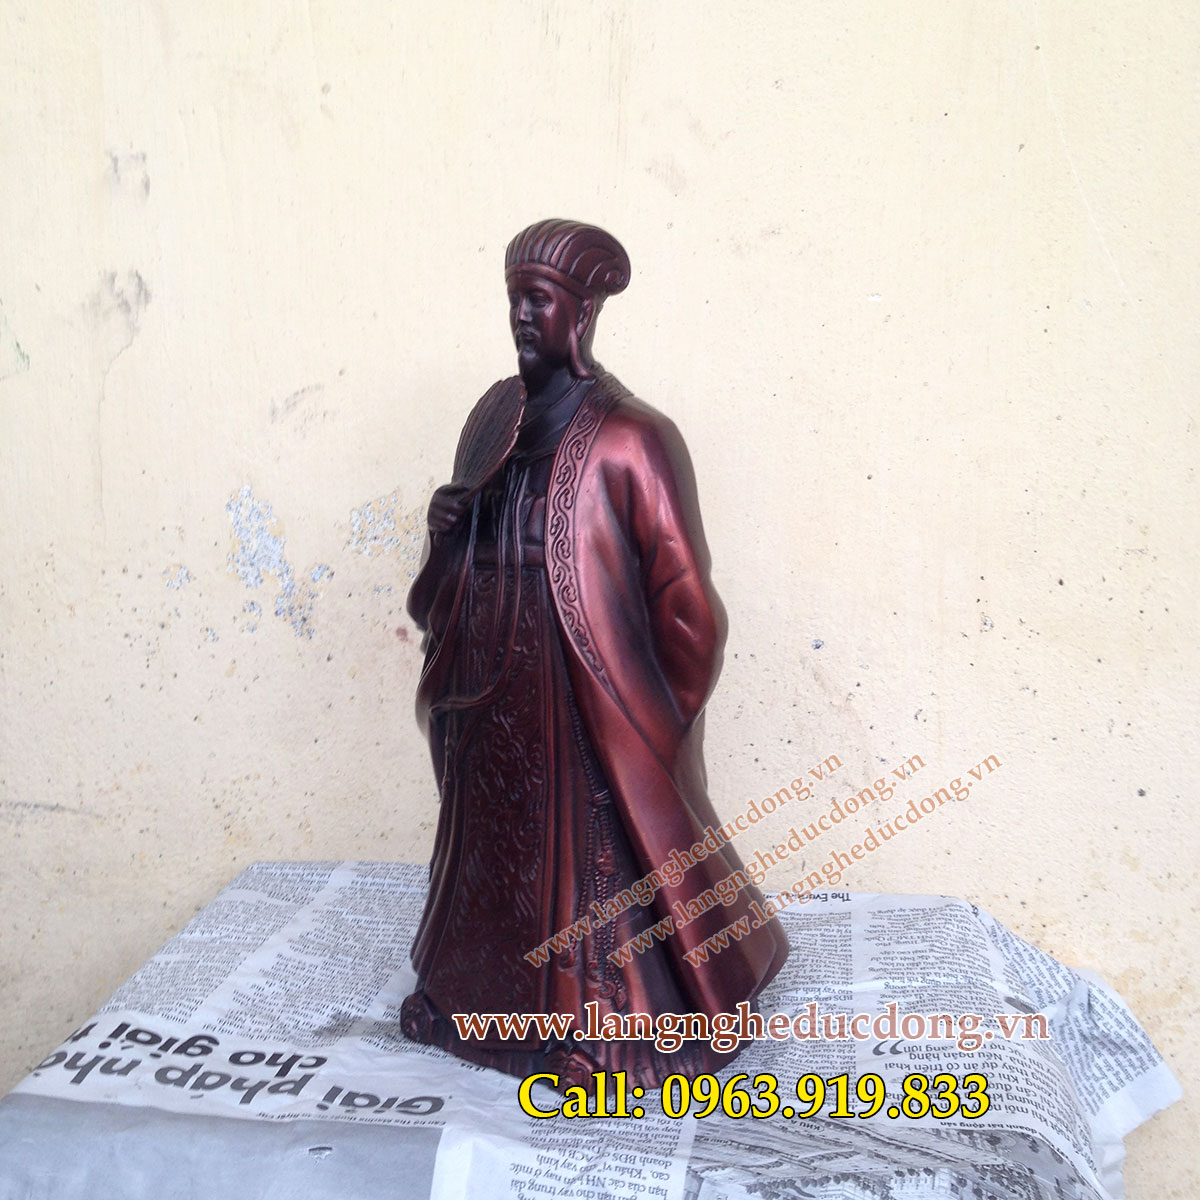 langngheducdong.vn - Khổng Minh Gia Cát Lượng, tượng đồng phong thủy 25cm